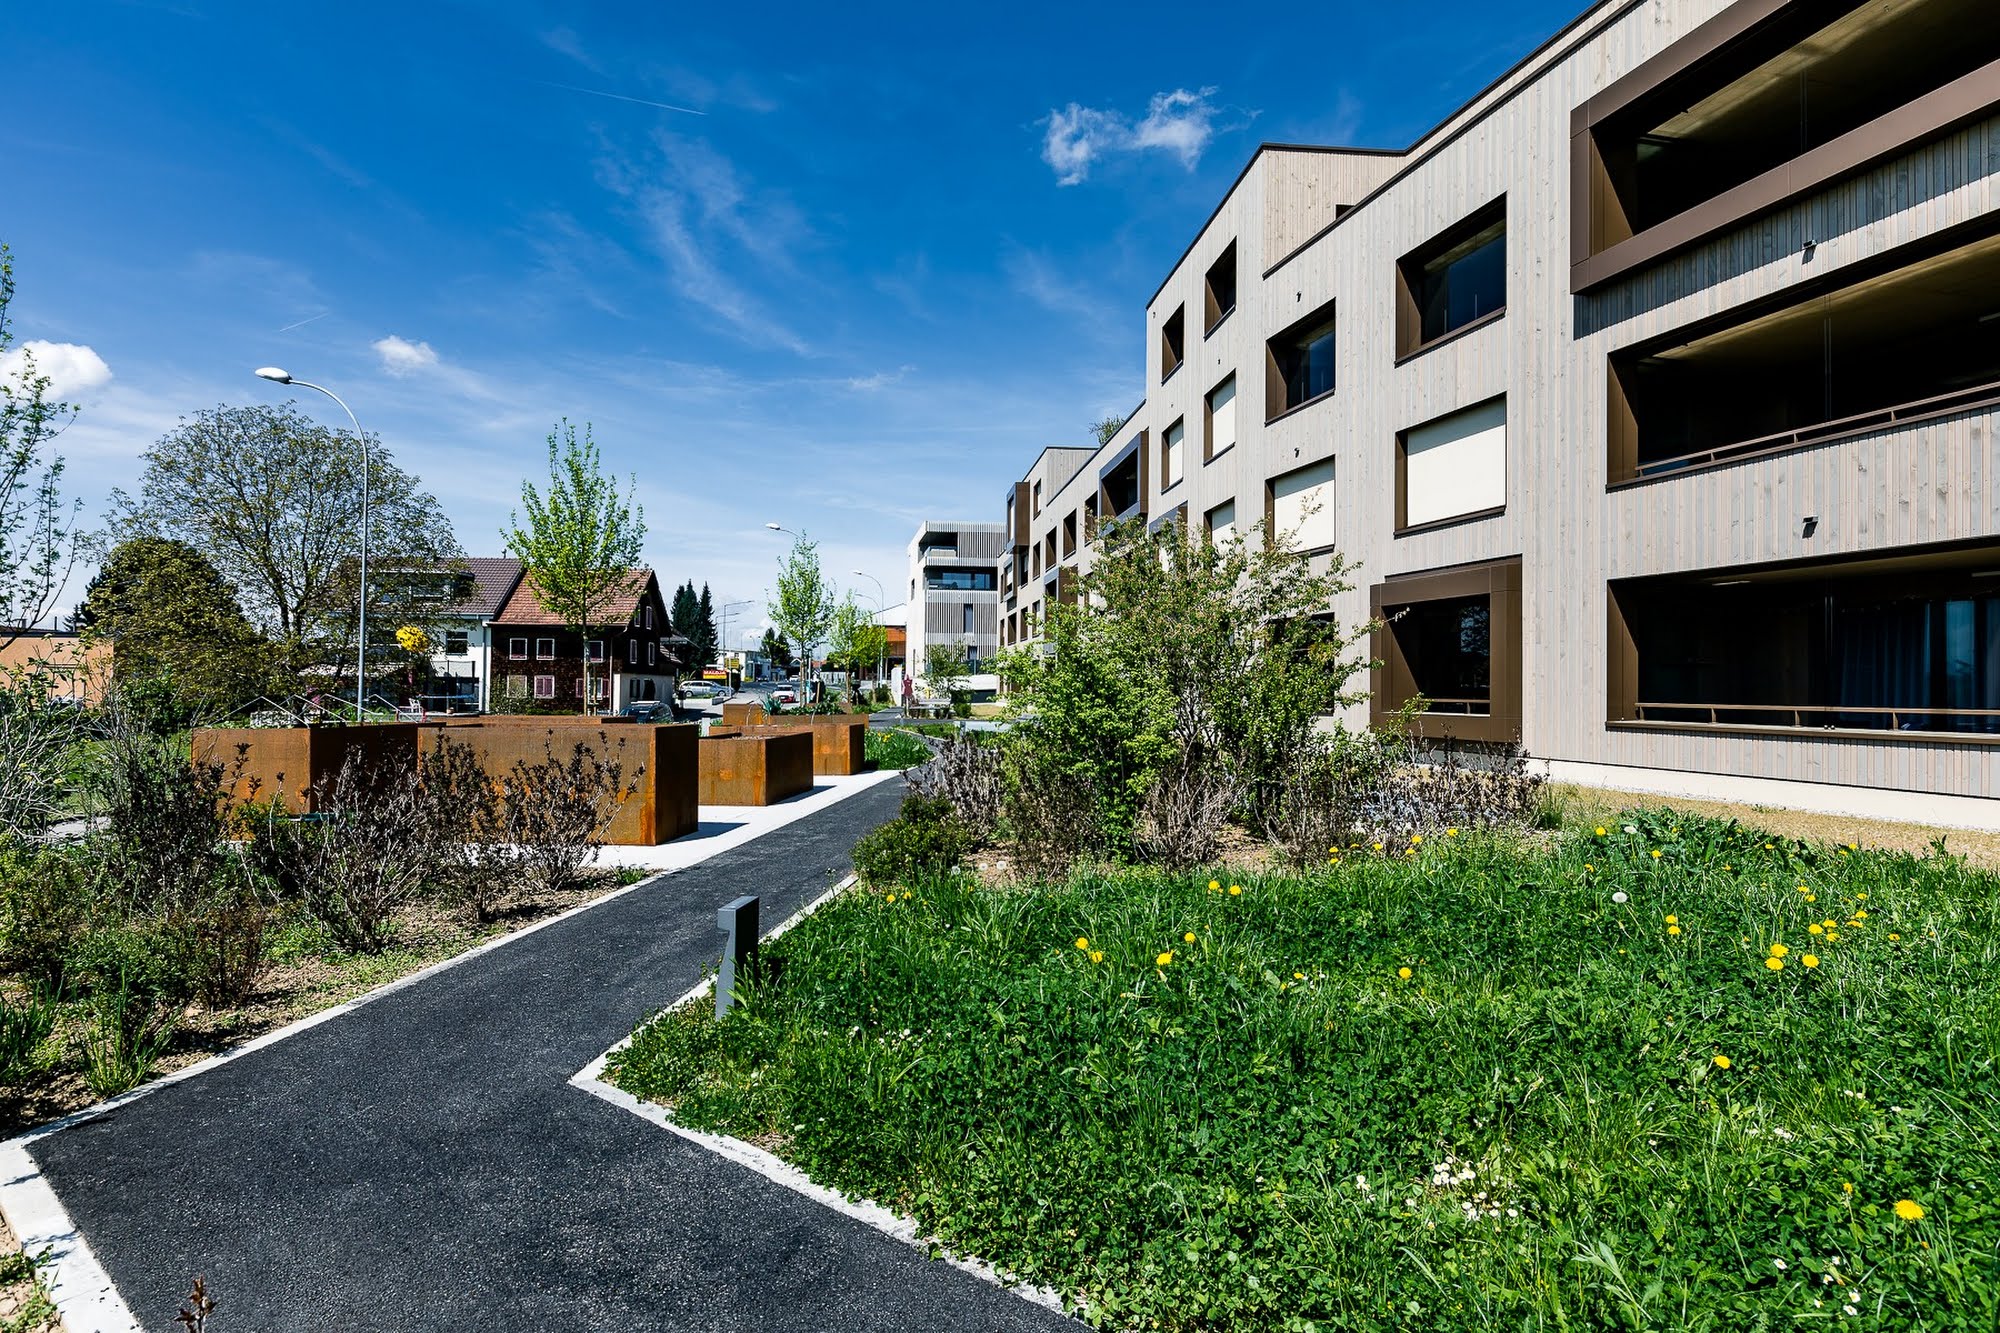 Wohnen MFH Wohnüberbauung Dorf in Schenkon Architektur,Wohnungsbau,Wohnhäuser,Einfamilienhäuser,Mehrfamilienhäuser